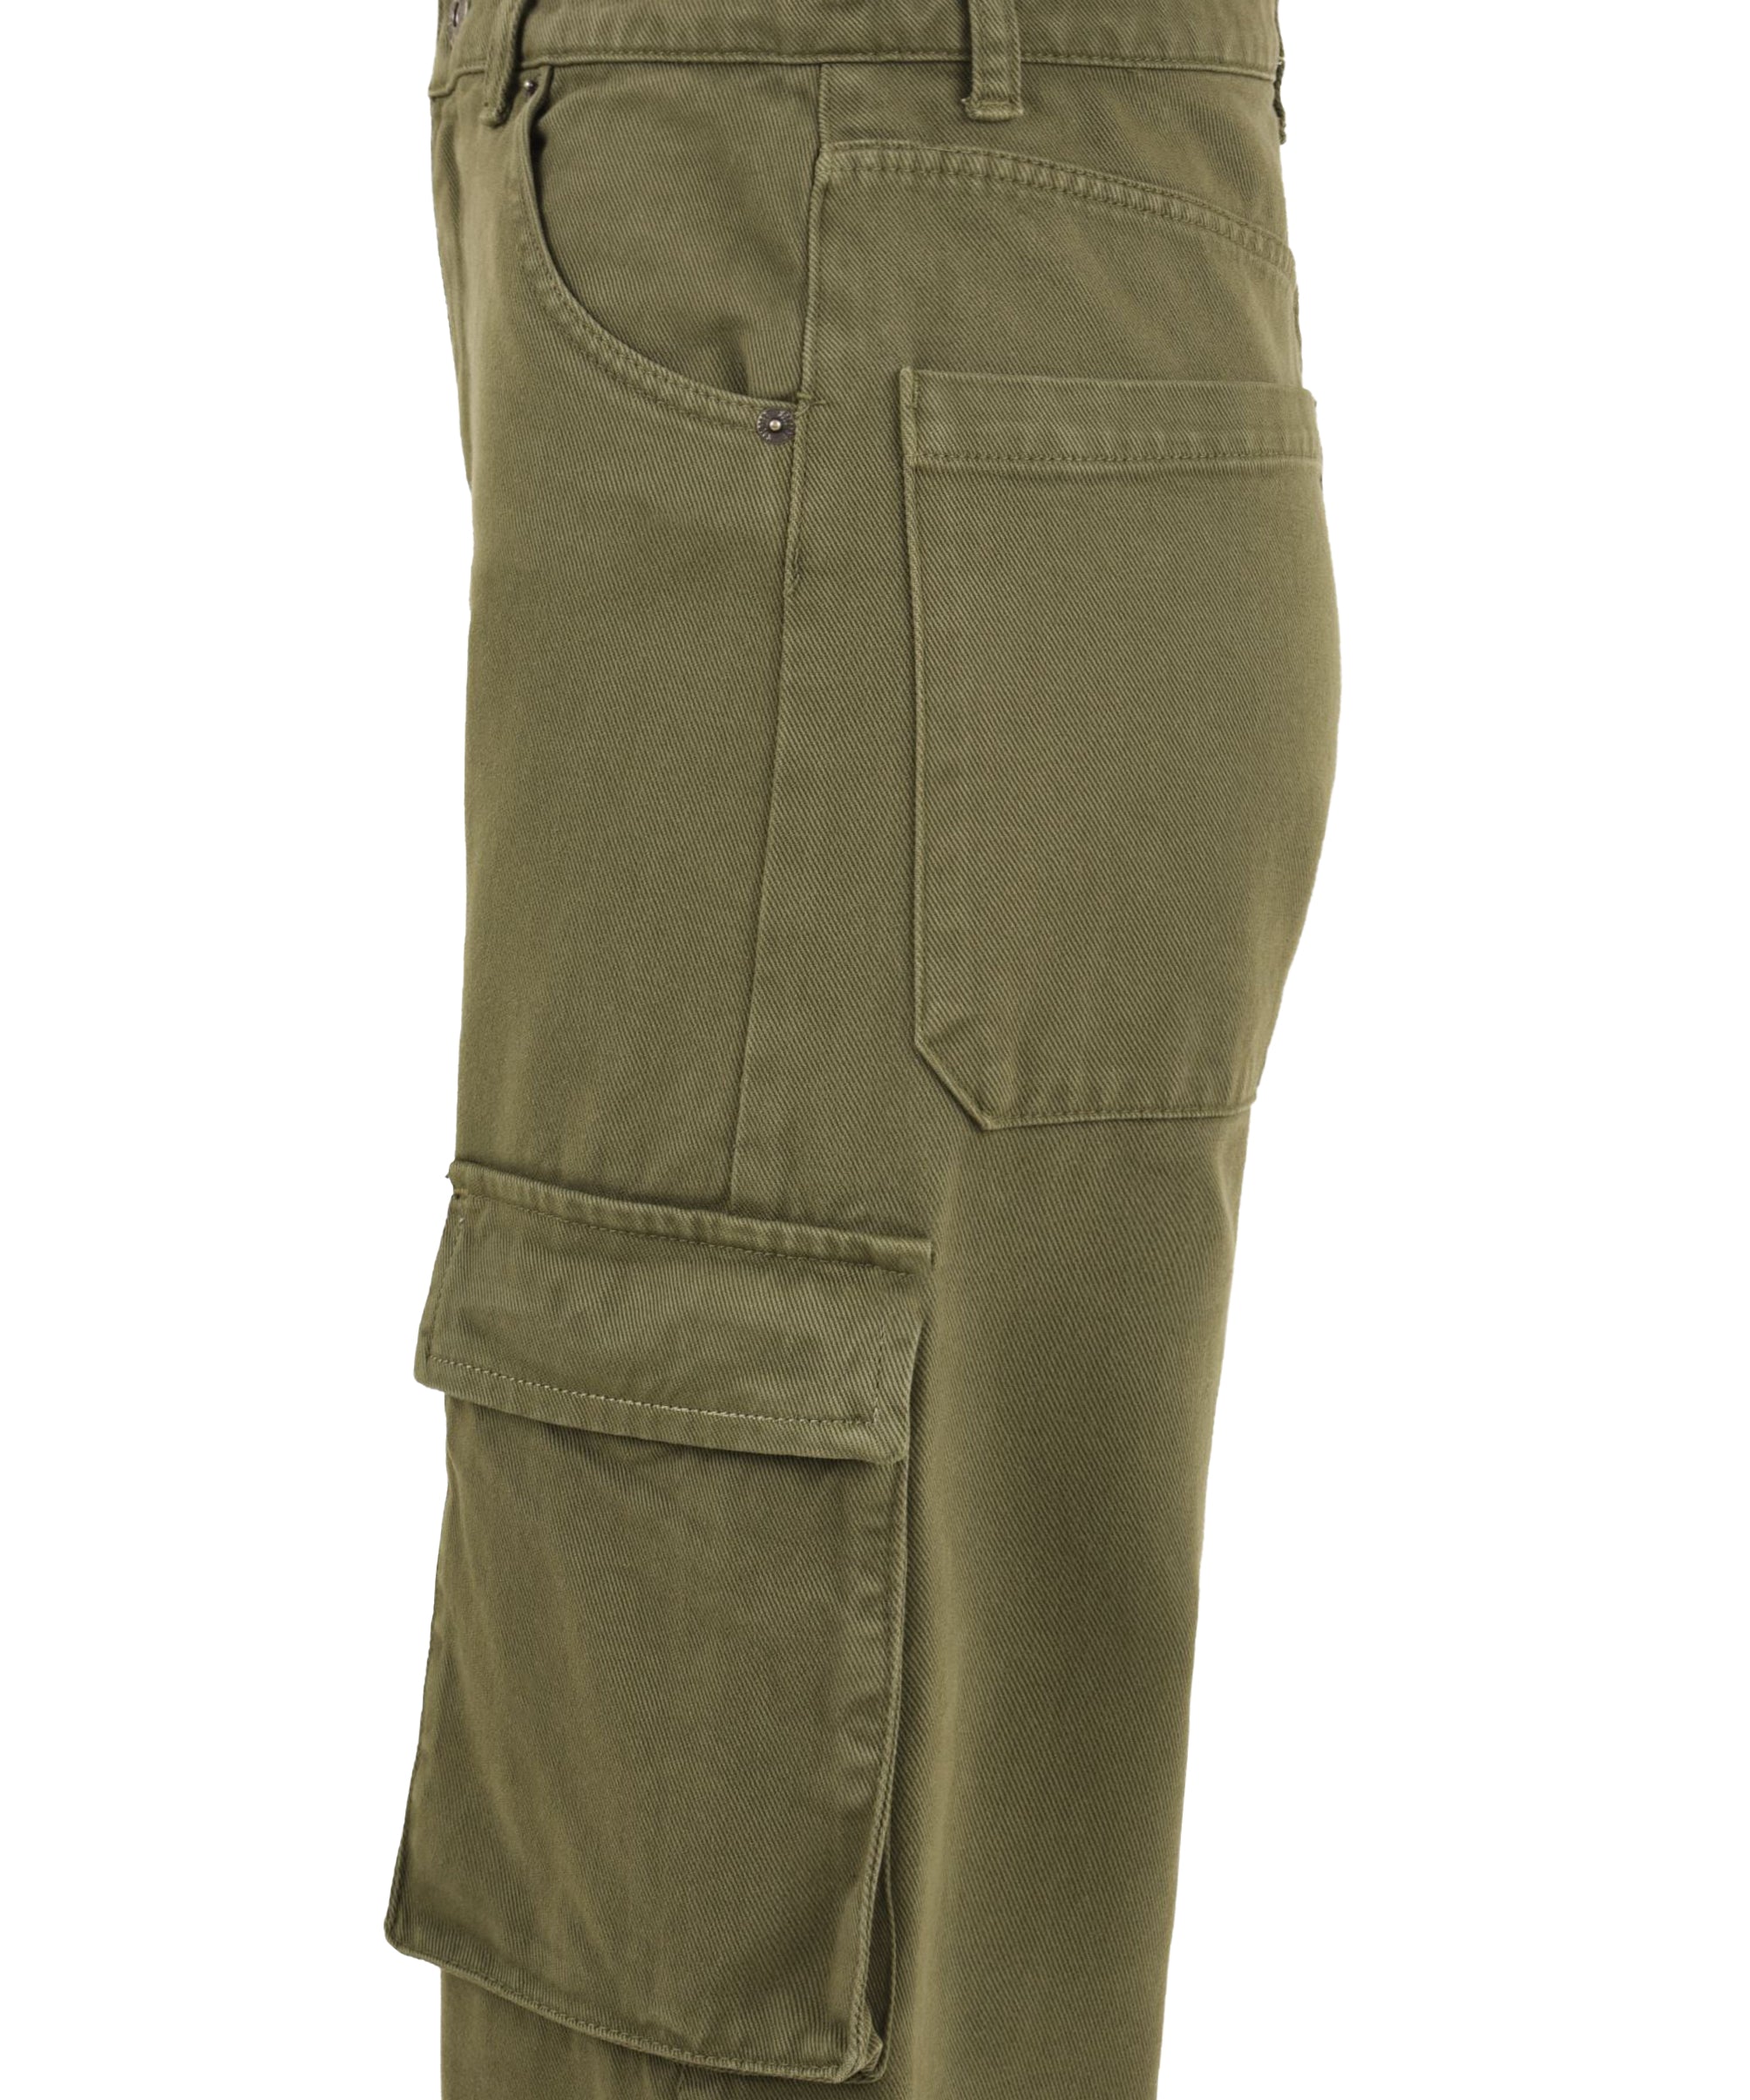 Pantalone Donna cargo verde, Solotre, lato